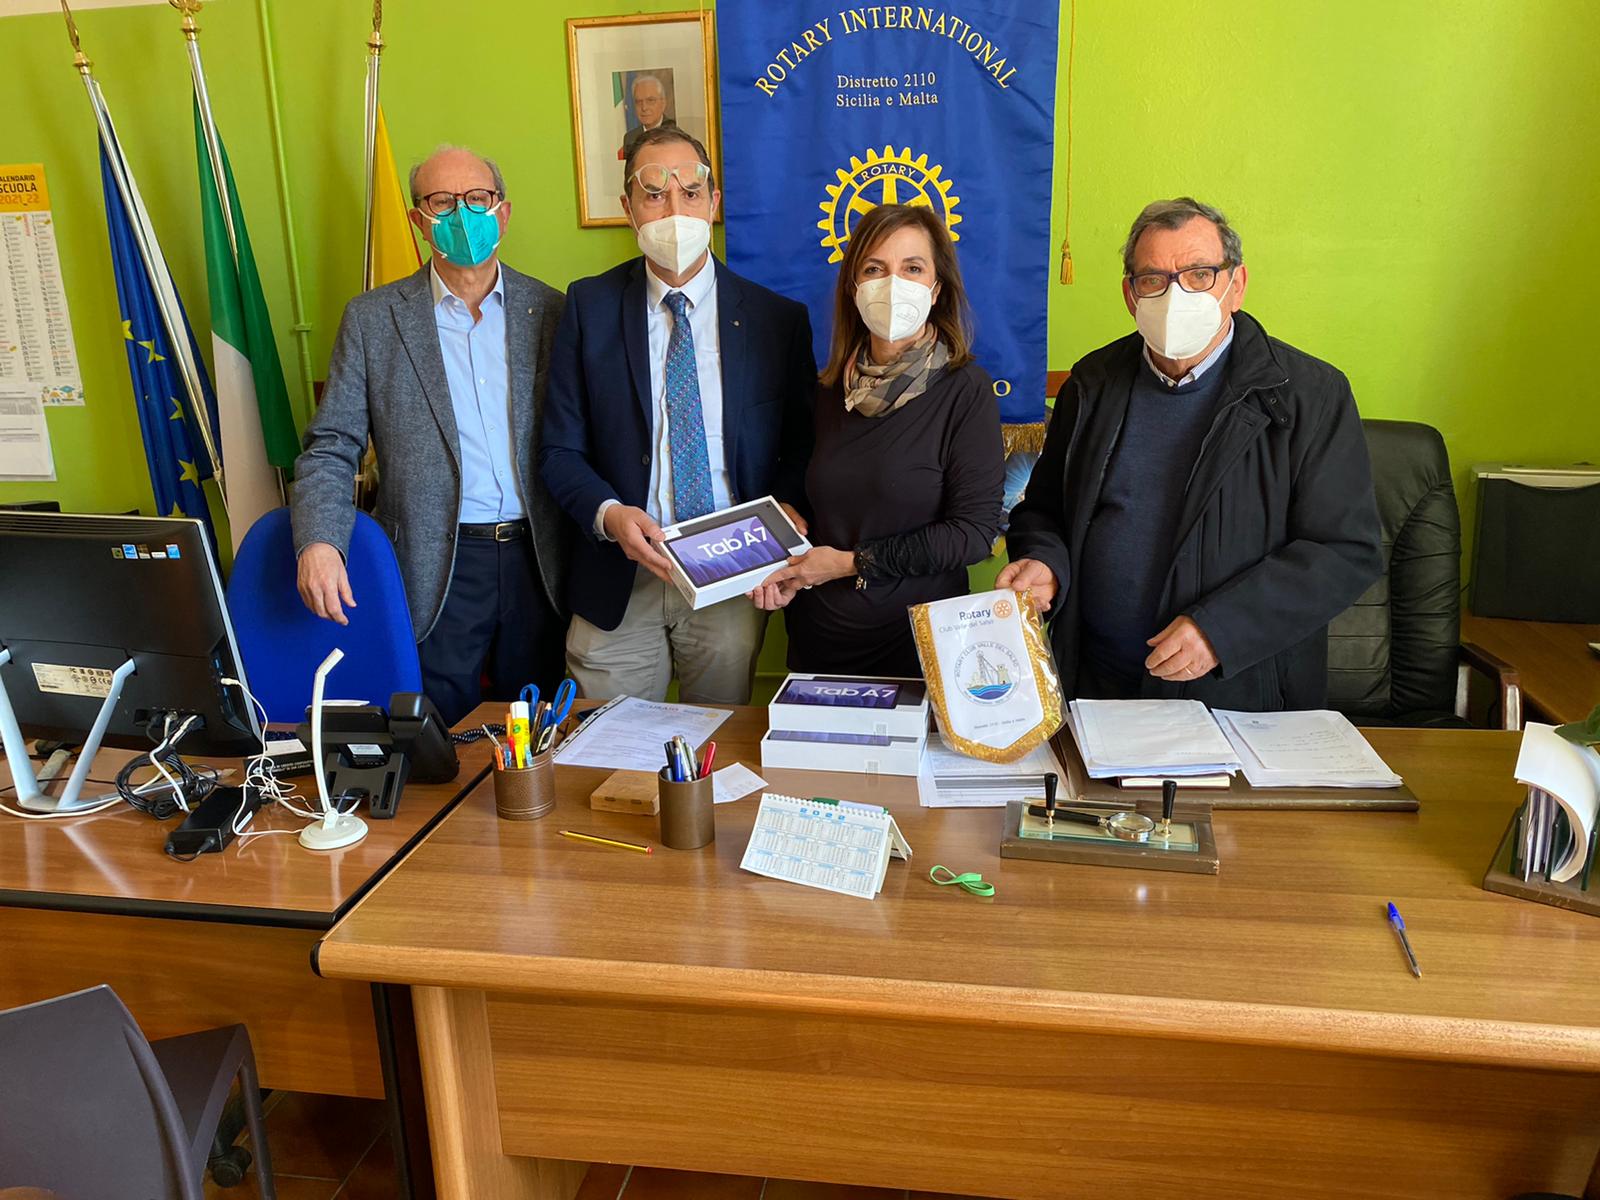 Il Rotary Club Valle del Salso dona tablet per la didattica digitale all’Istituto Comprensivo “Nino di Maria” di Sommatino e Delia.